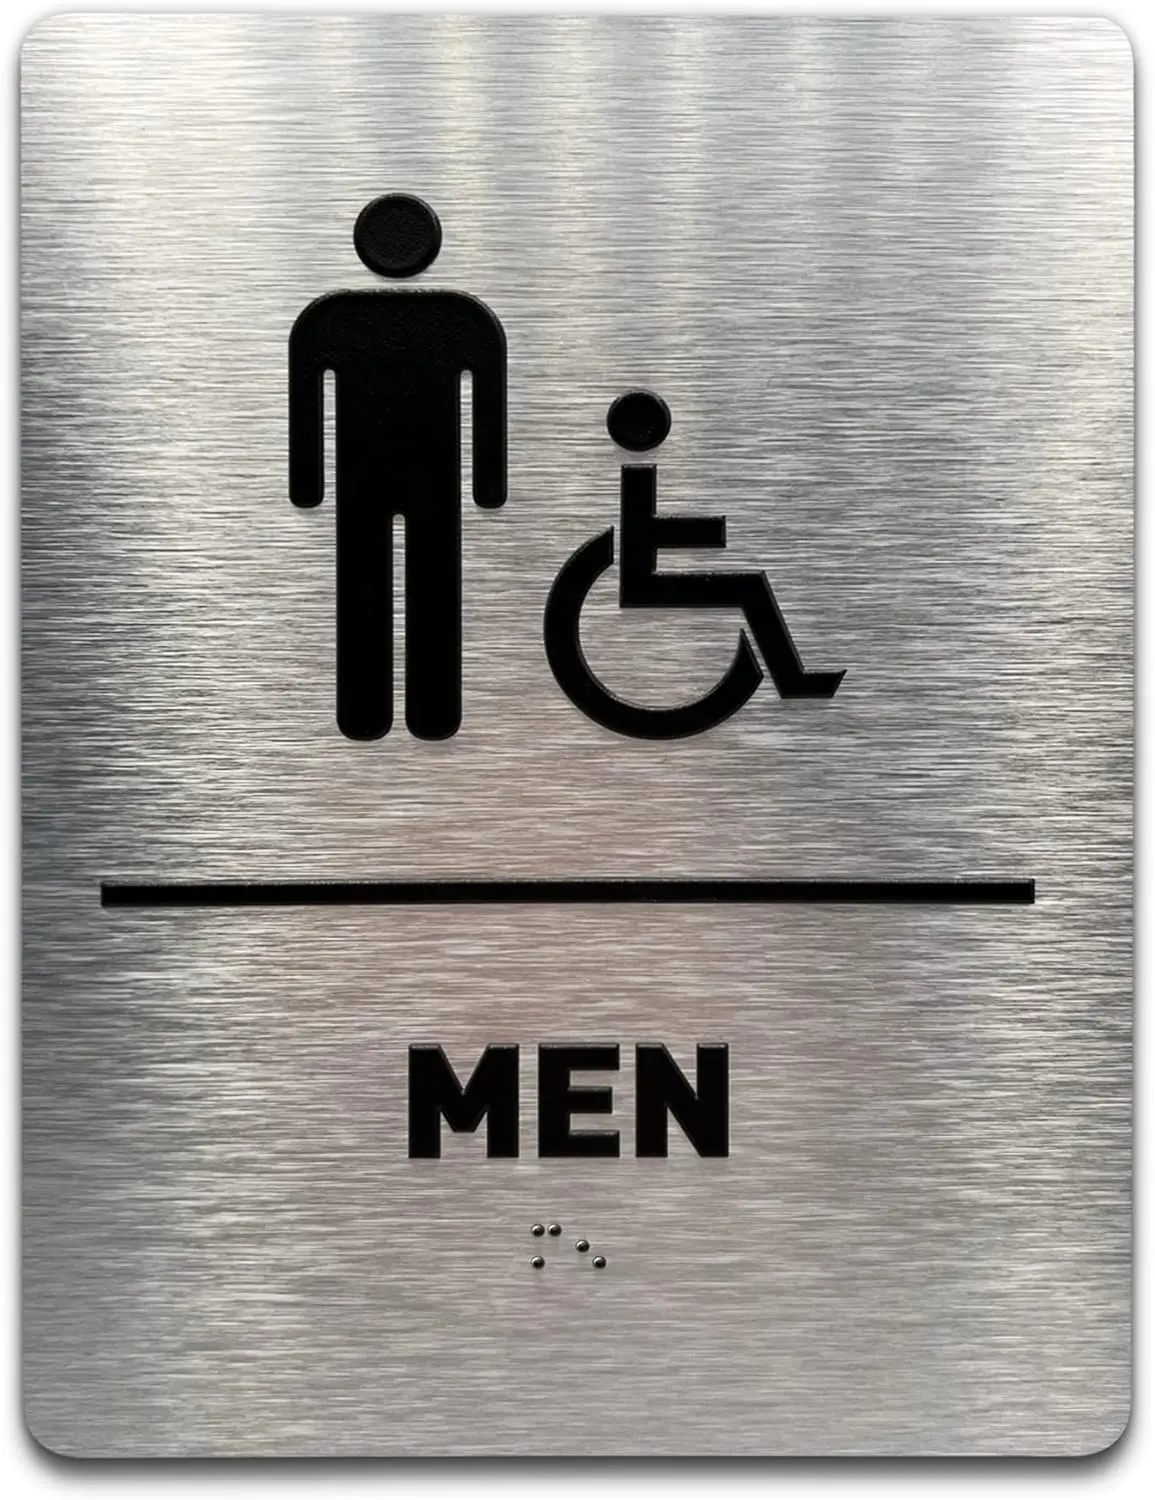 Placa de banheiro para cadeira de rodas masculina ADA Compliant, acessível para cadeiras de rodas, ícones elevados e Braille grau 2 - Inclui tiras adesivas